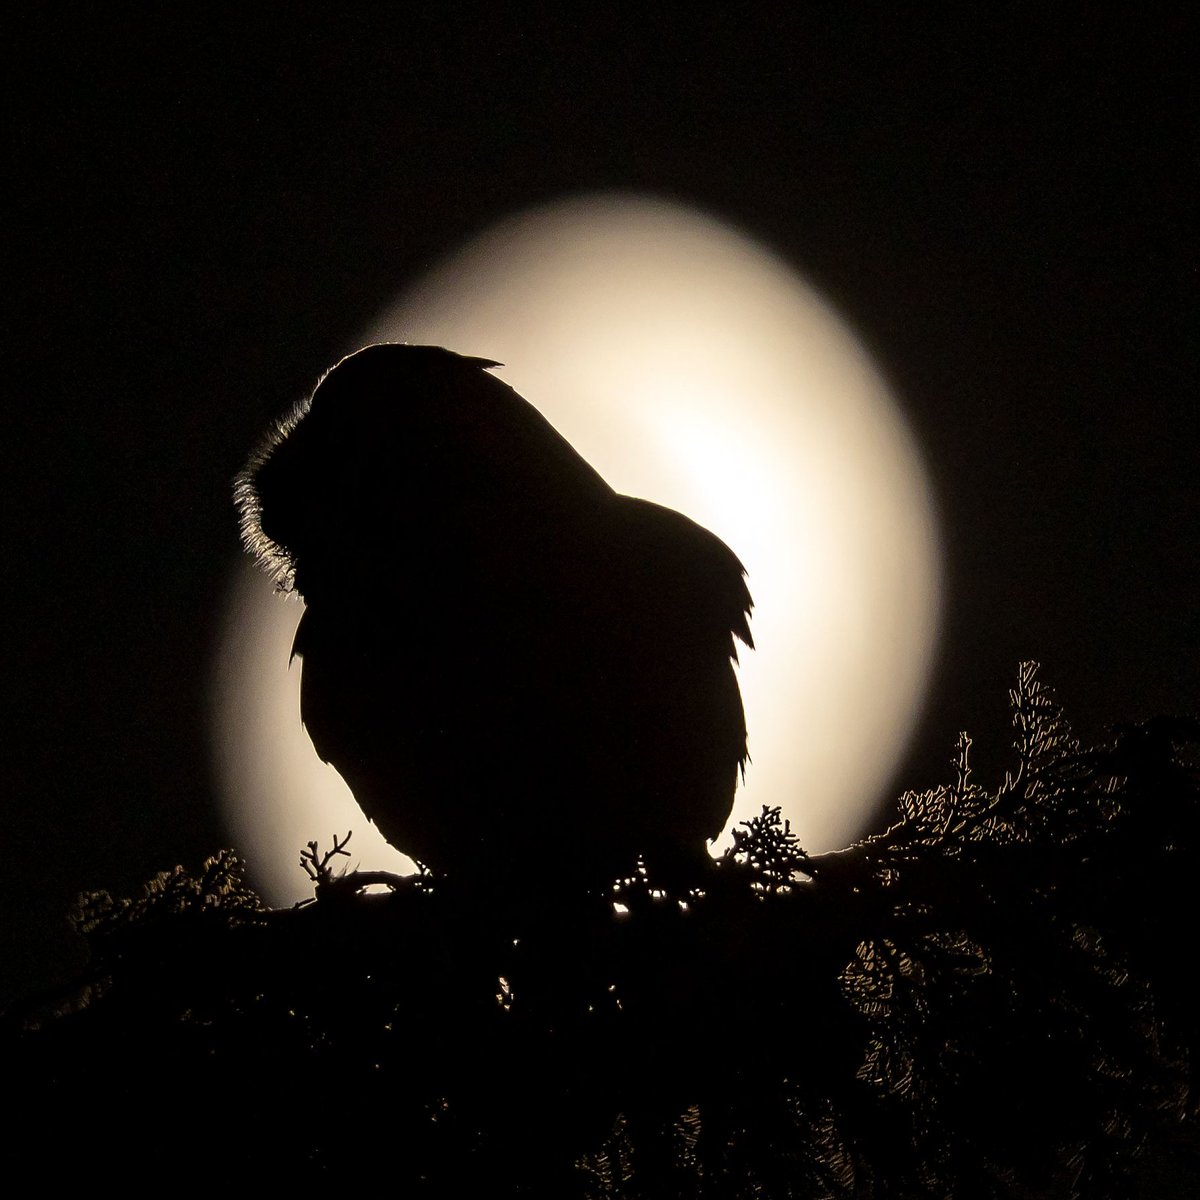 Kulaklı orman baykuşu » Long-eared Owl » Asio otus Ay ışığında fotoğrafını çekmek için yıllarca beklemem gerekti 🙂 #hangitür